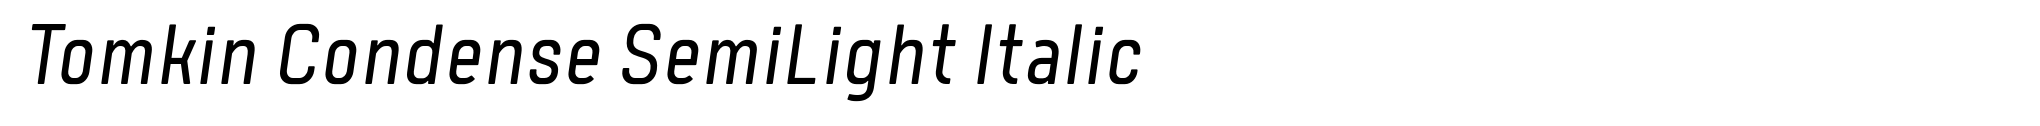 Tomkin Condense SemiLight Italic image